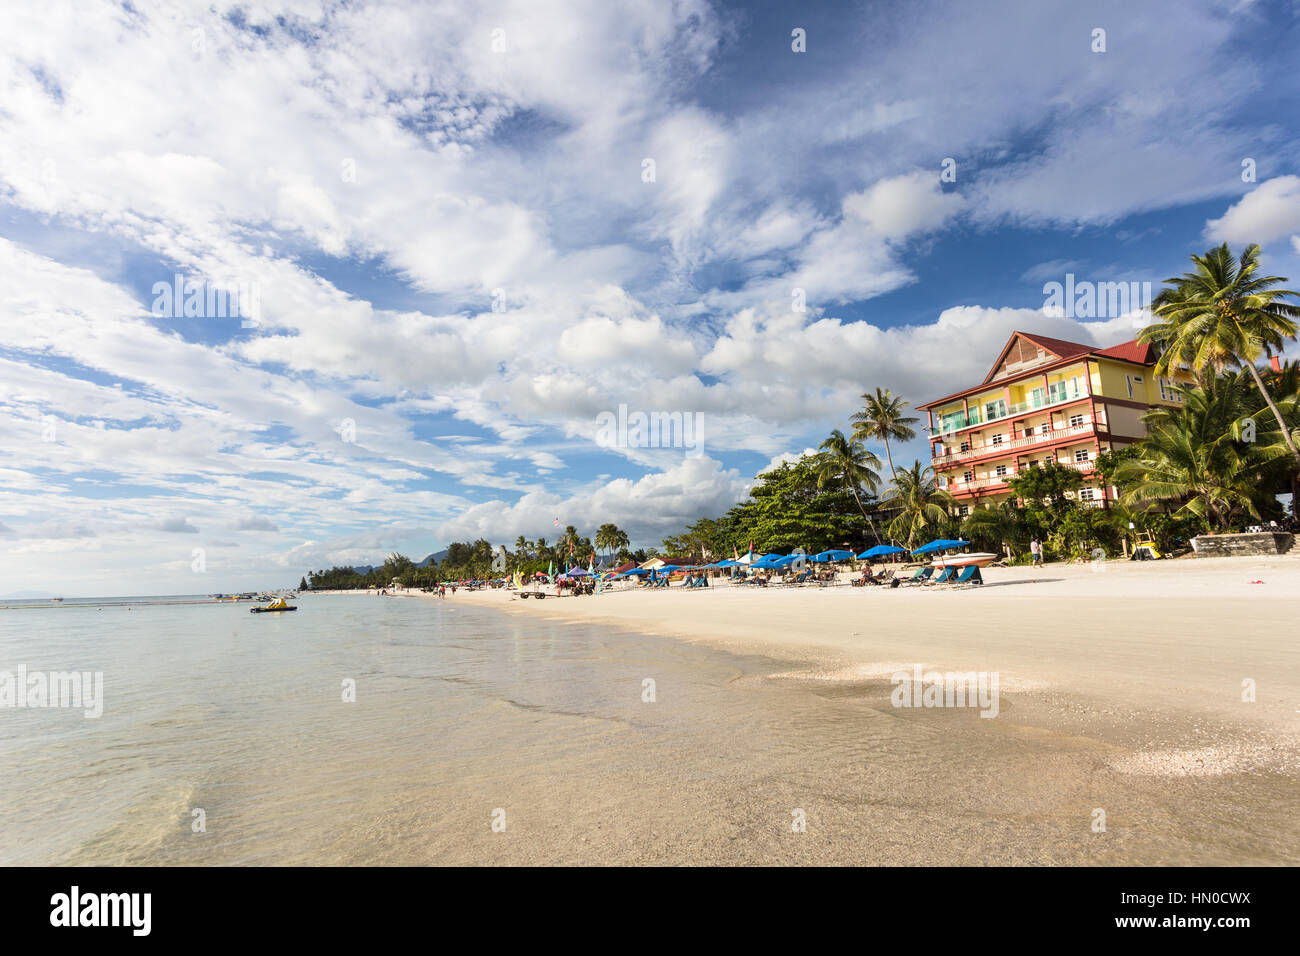 Pantai Cenang ist der beliebteste Strand auf der Insel Langkawi entlang der Andamanensee in Malaysia Kedah Zustand. Stockfoto